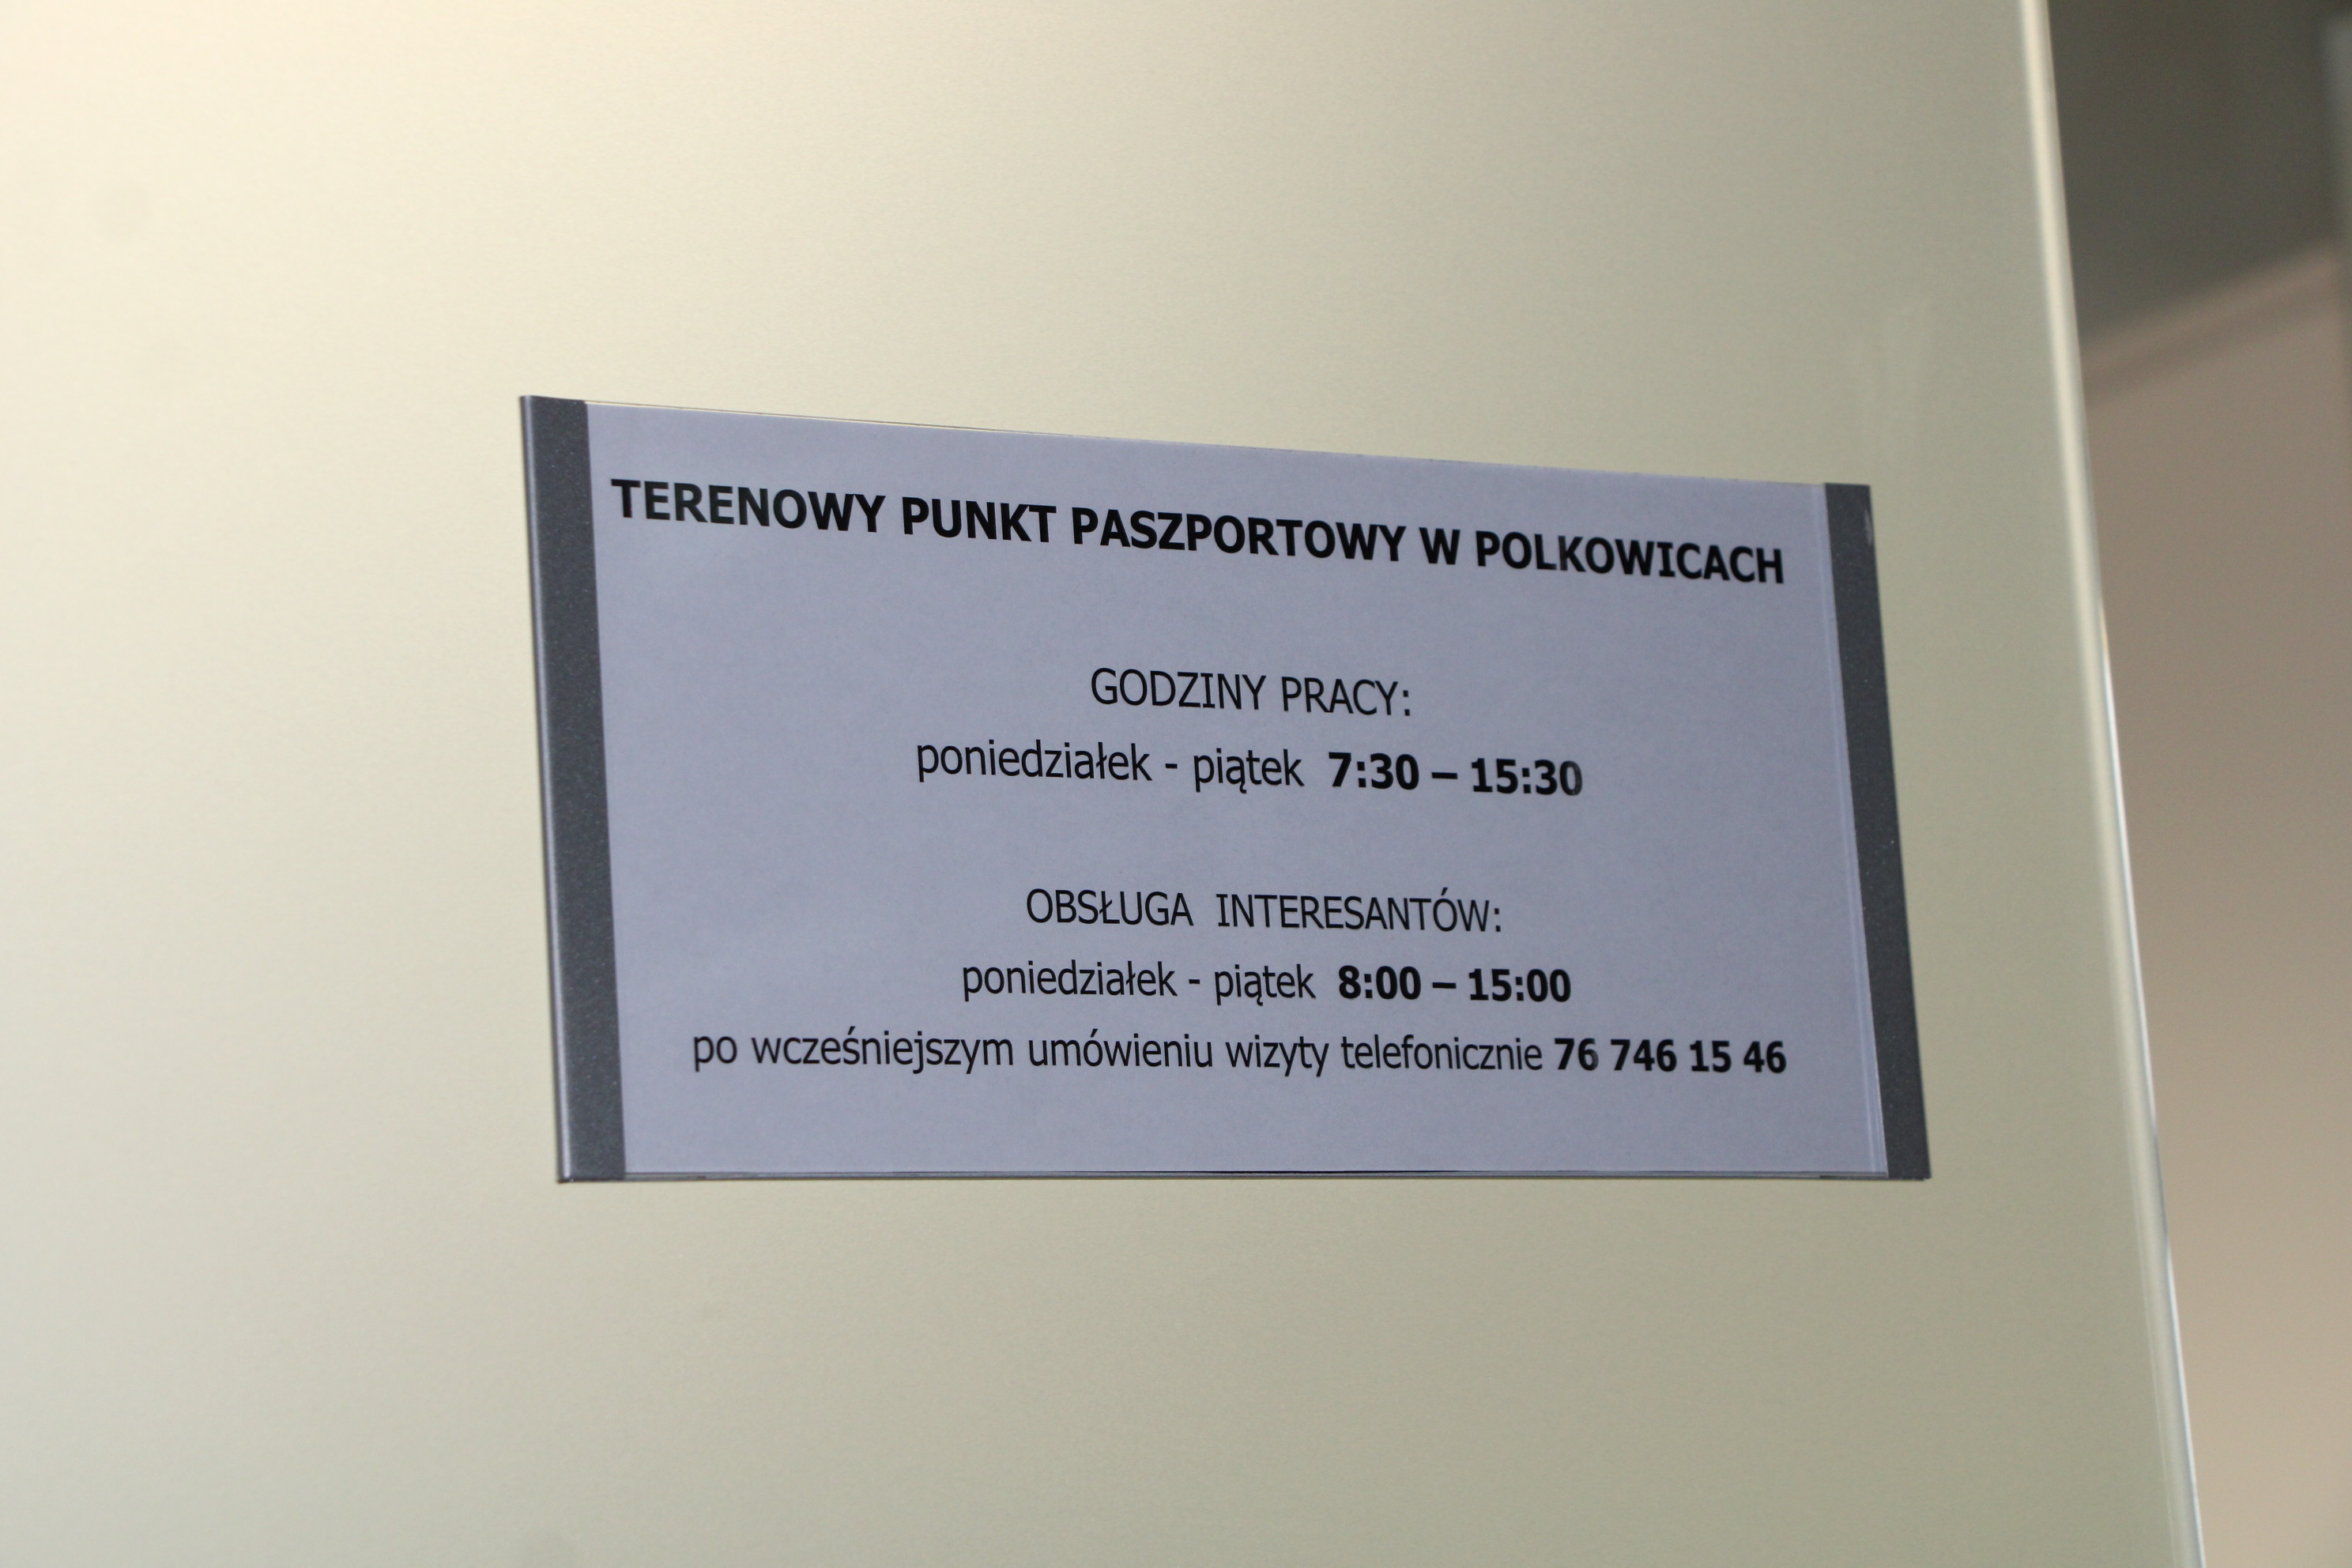 Tablica pokazuje godziny pracy punktu paszportowego w Polkowicach